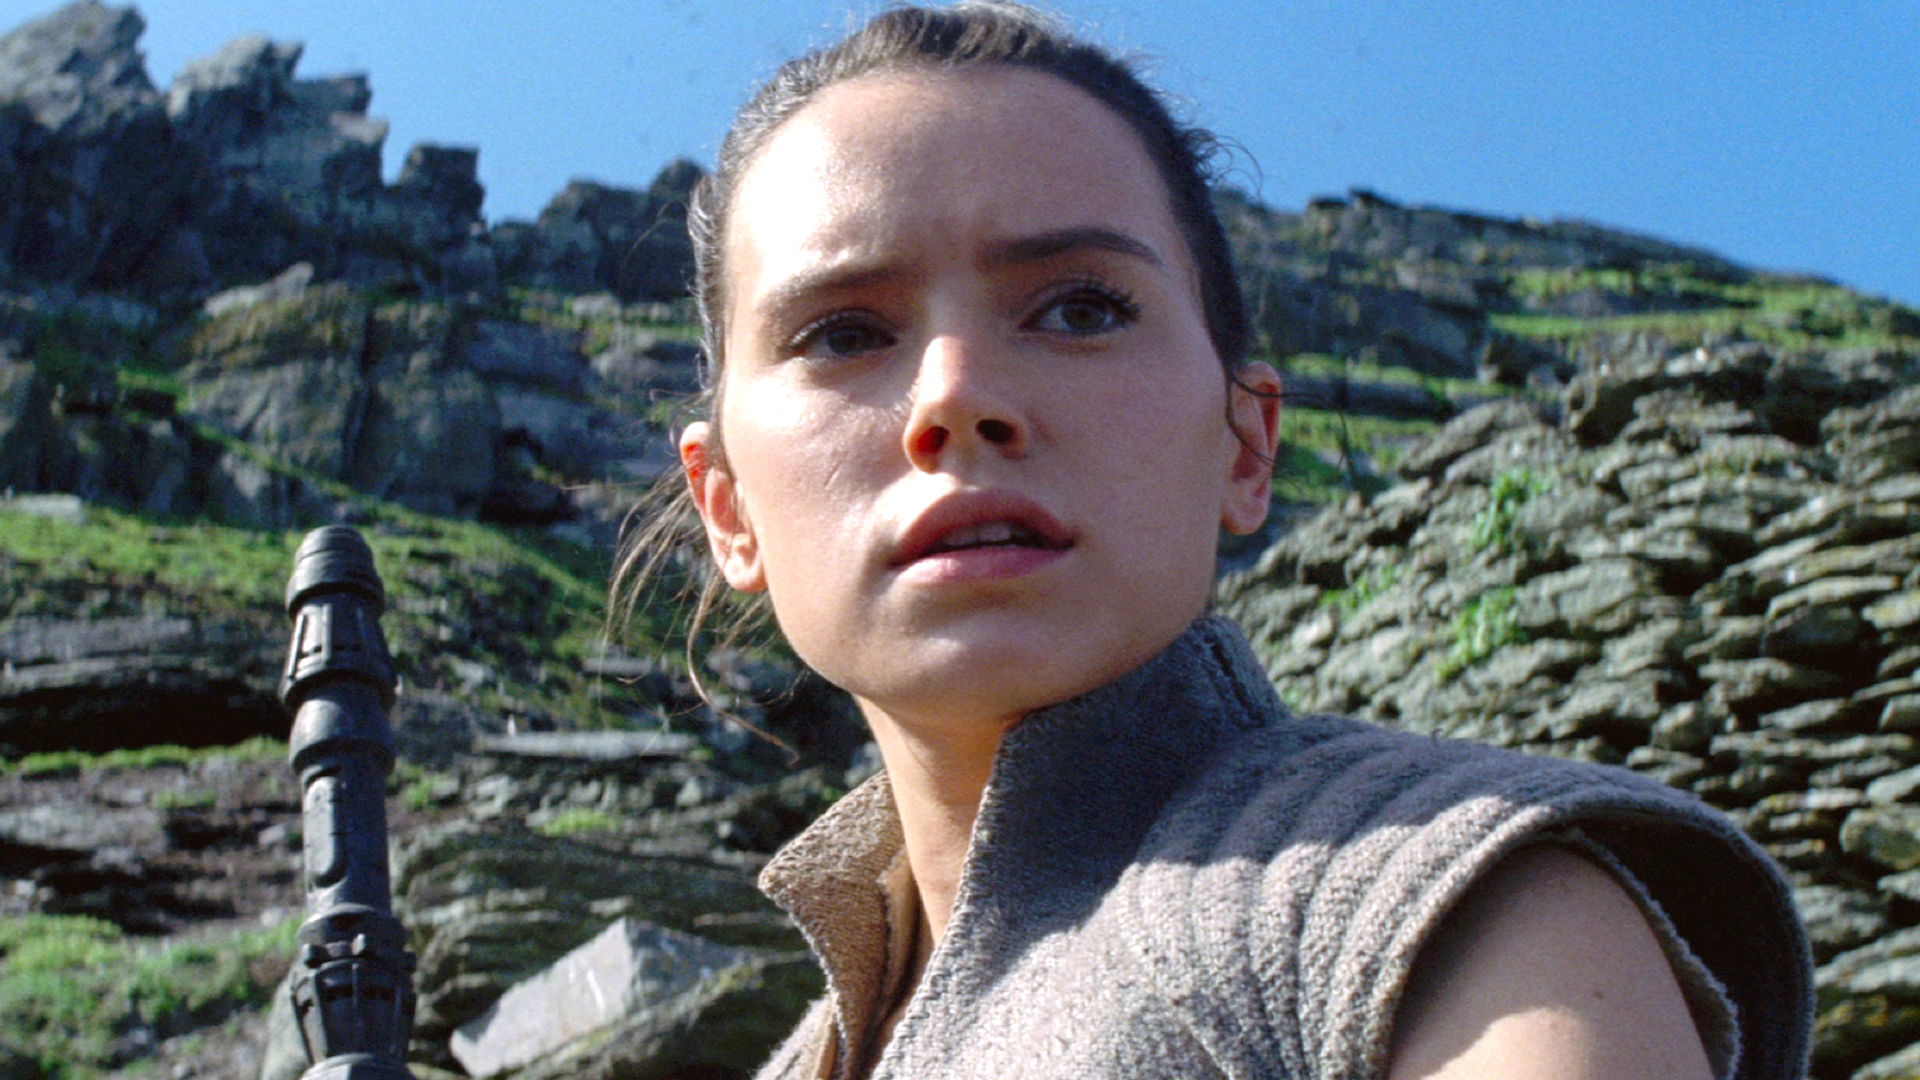 Last Jedi' sneak peek reveals key Rey, Luke Skywalker meeting details